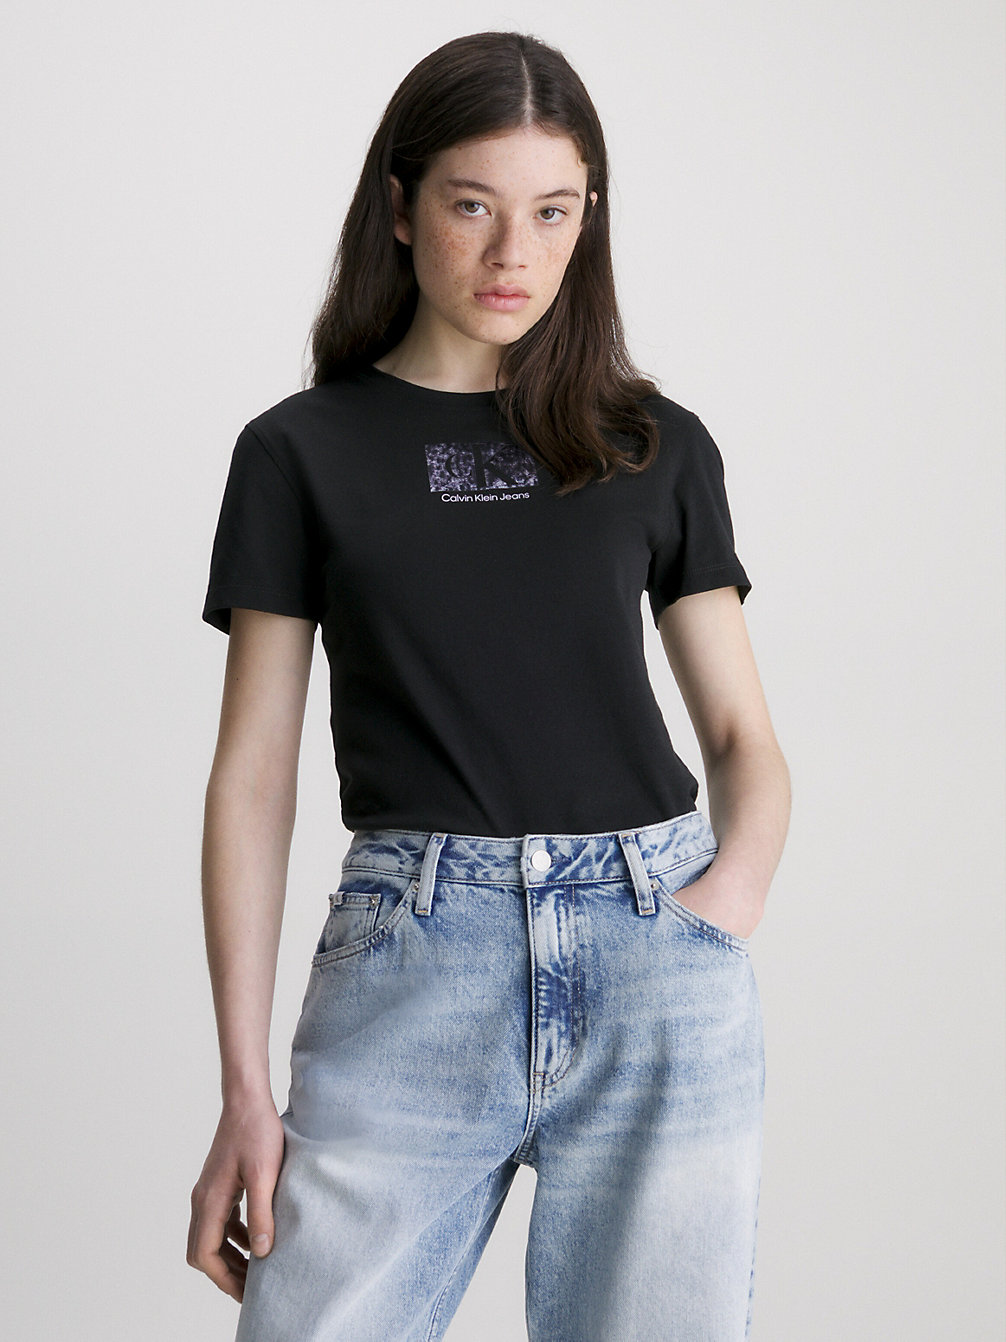 CK BLACK Slim Organic Cotton Logo T-Shirt undefined women Calvin Klein